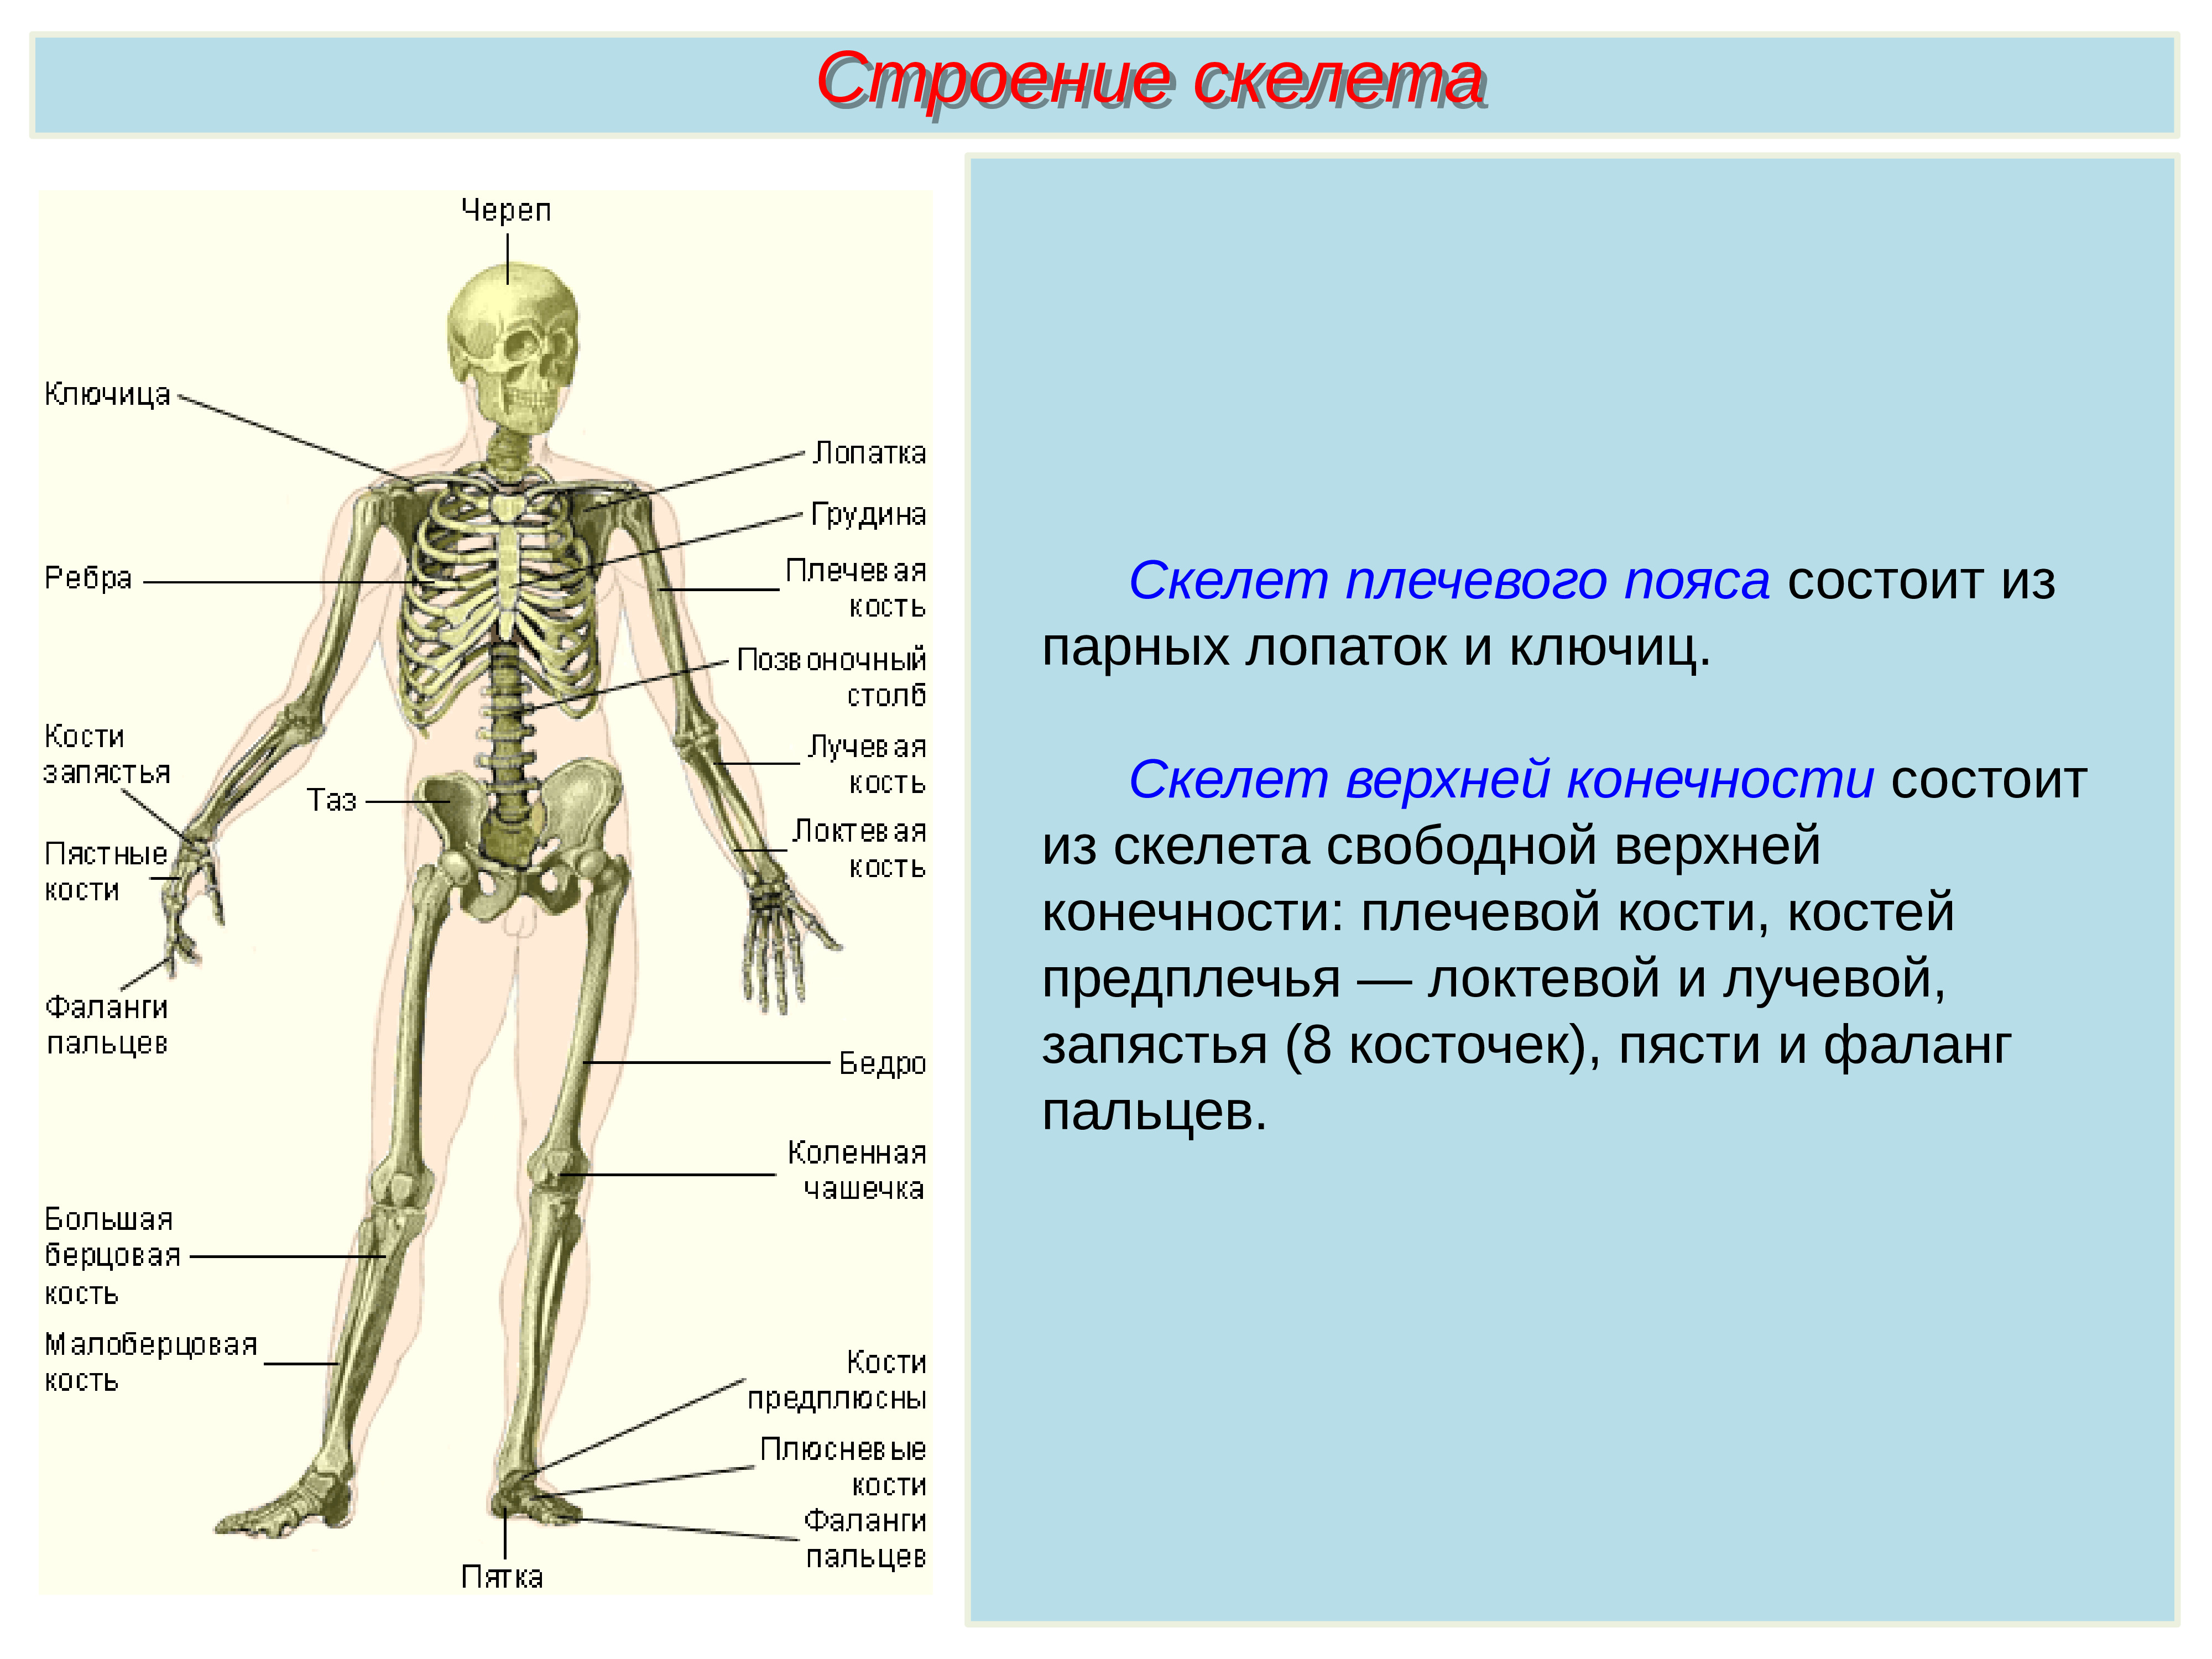 2 кости и их соединения. Биология 8 класс скелет строение состав и соединение костей. Строение скелета туловища человека. Скелет туловища Тип соединения костей. Название костей скелета туловища.